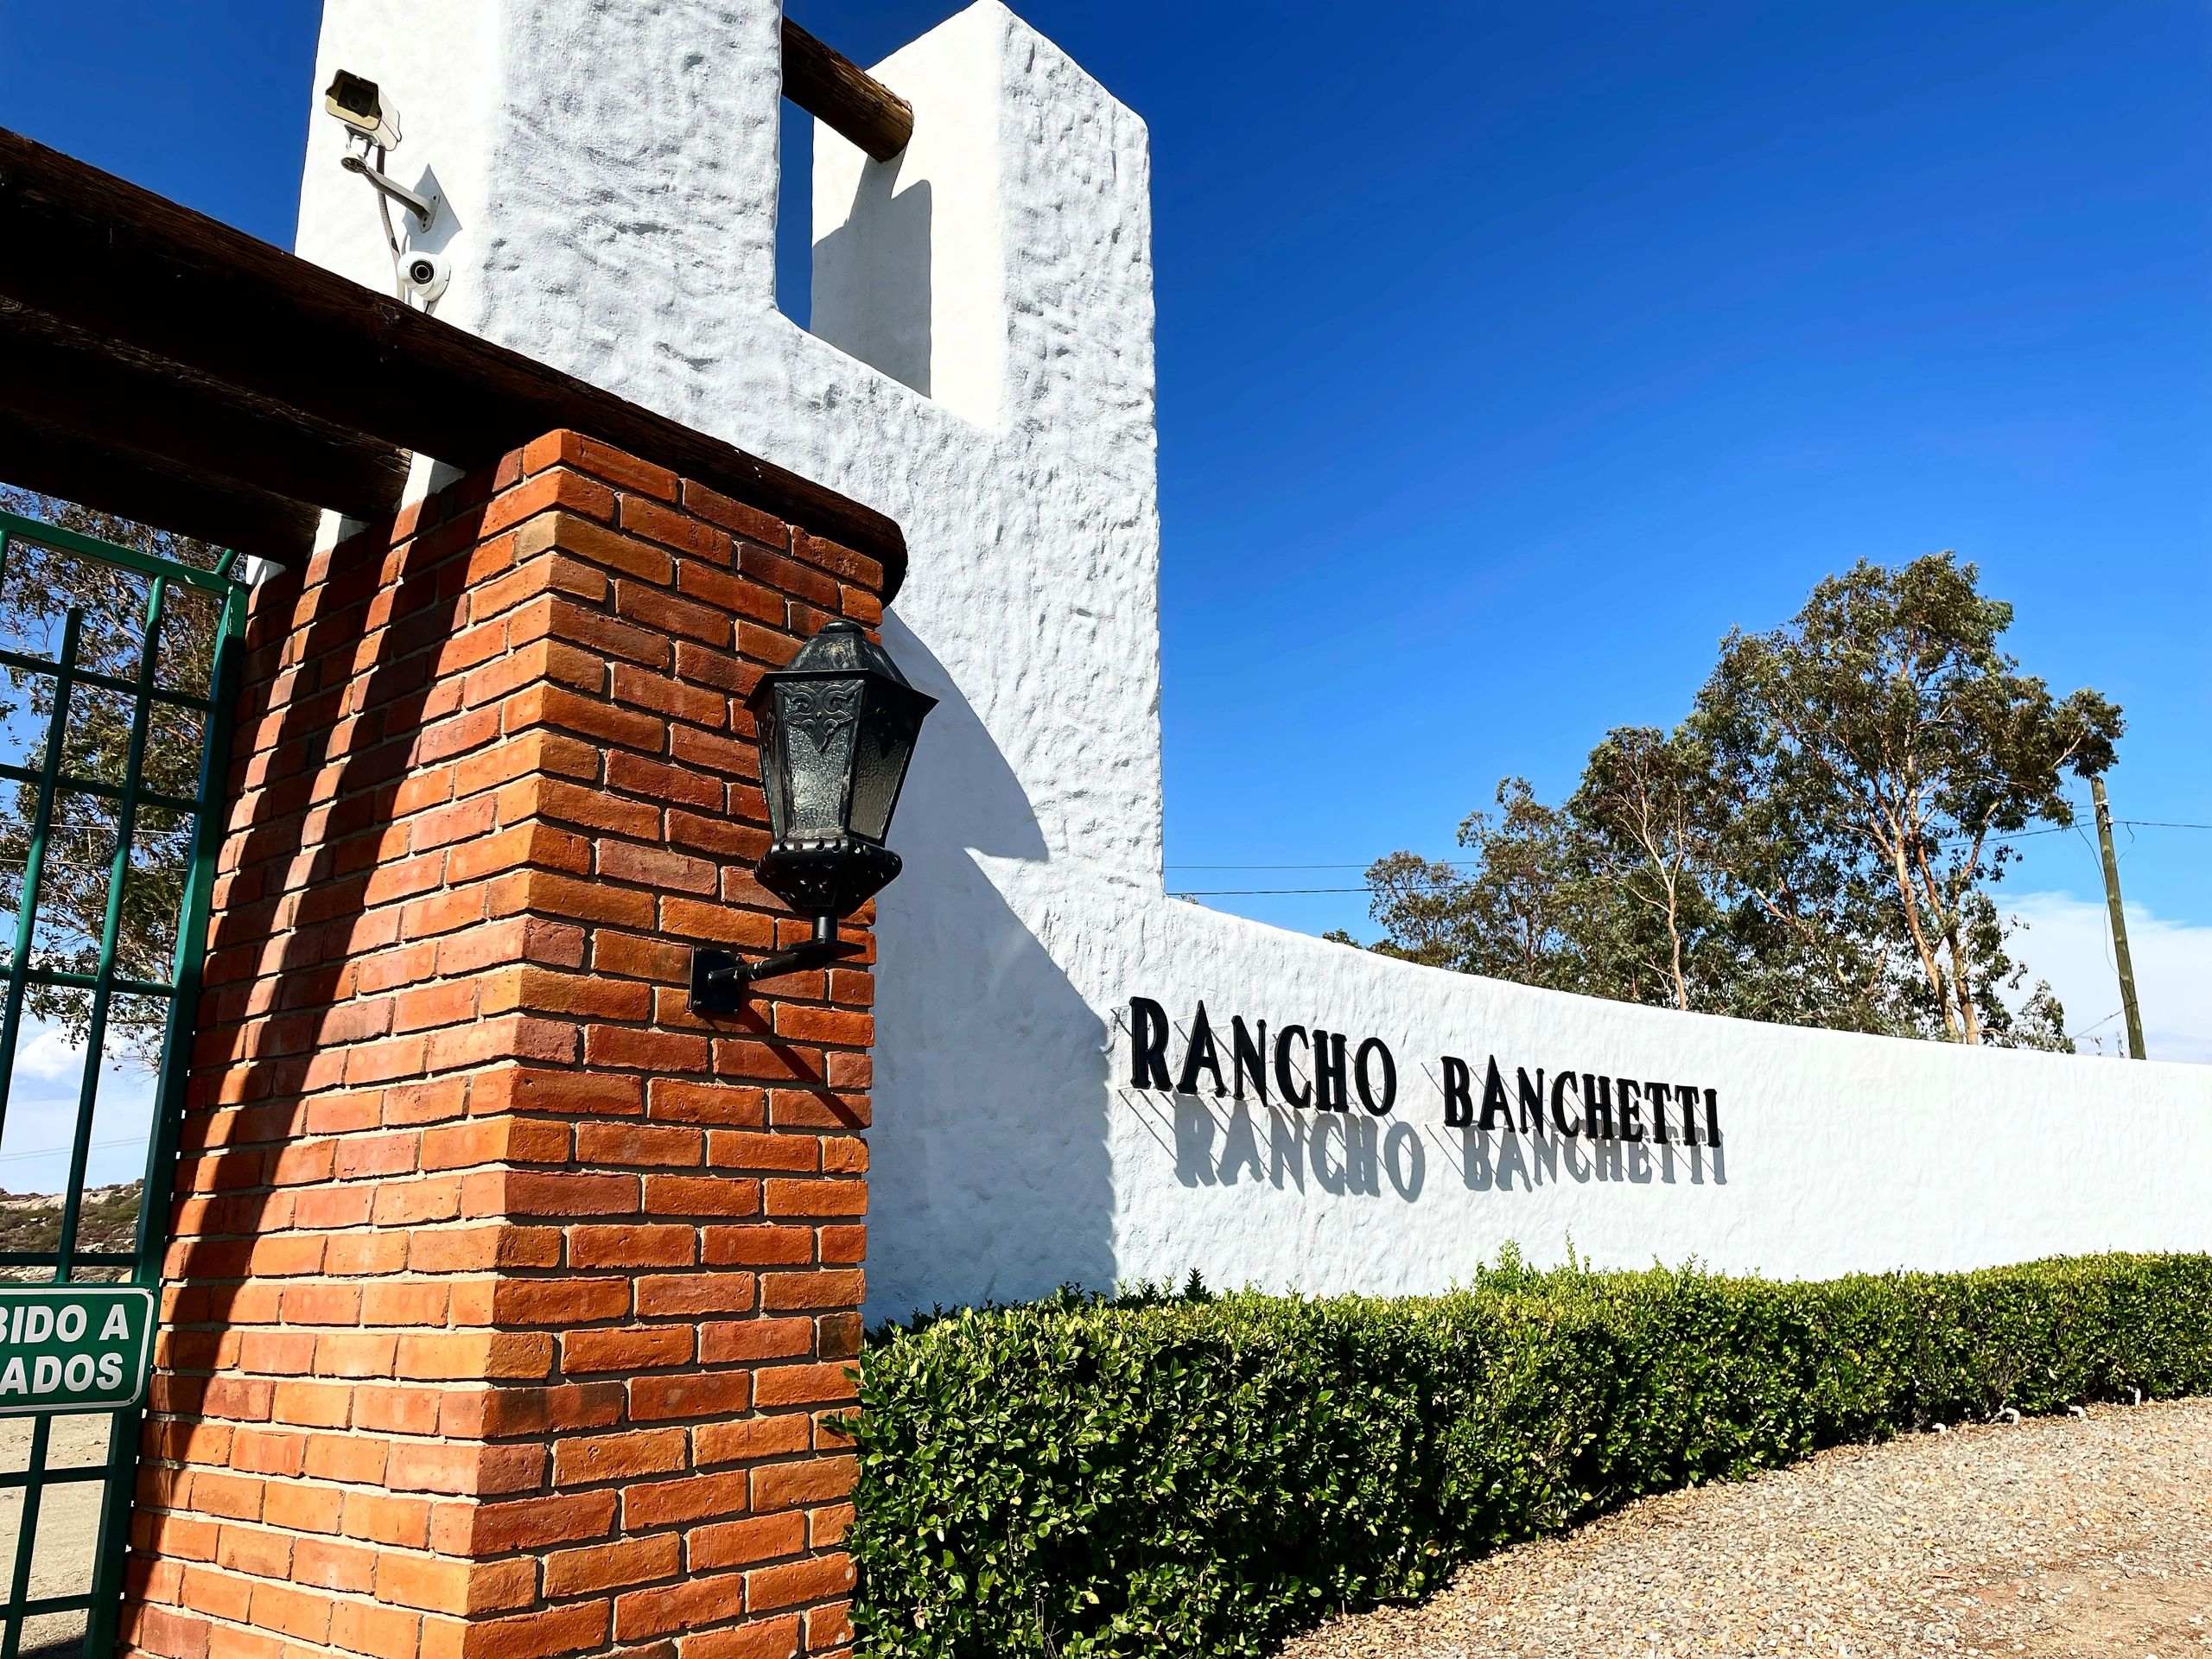 (c) Ranchobanchetti.com